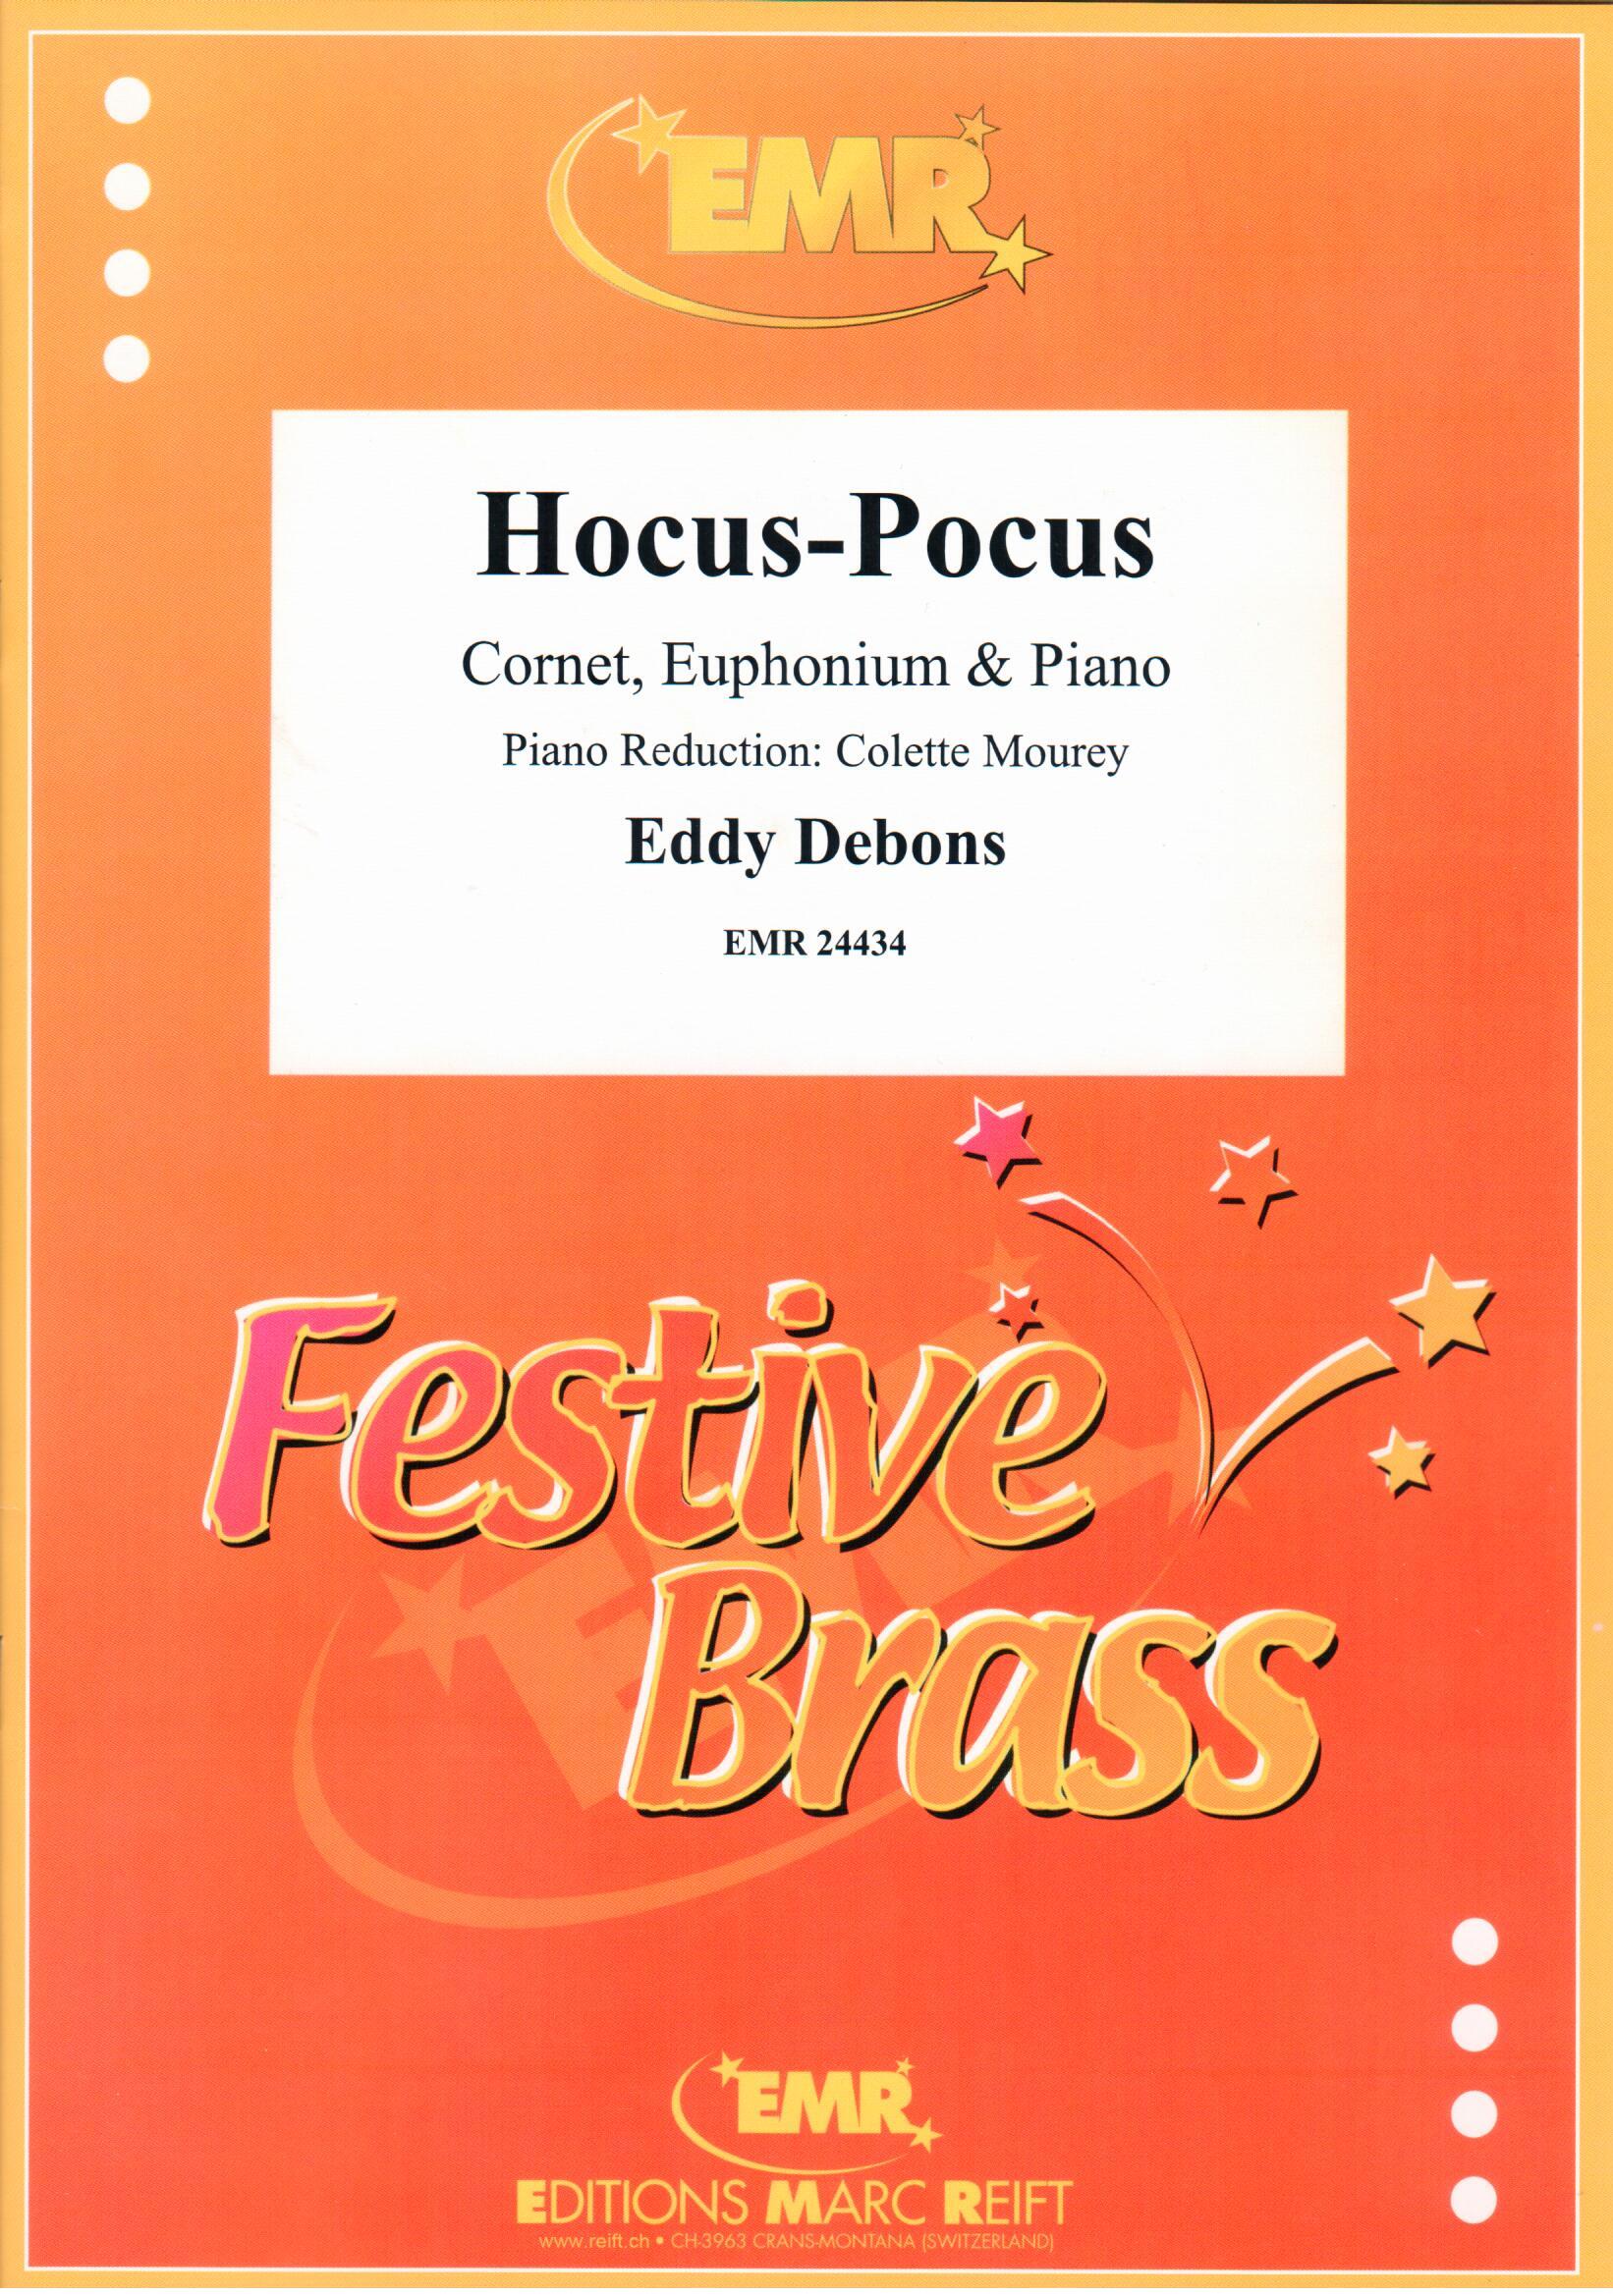 HOCUS-POCUS, Duets